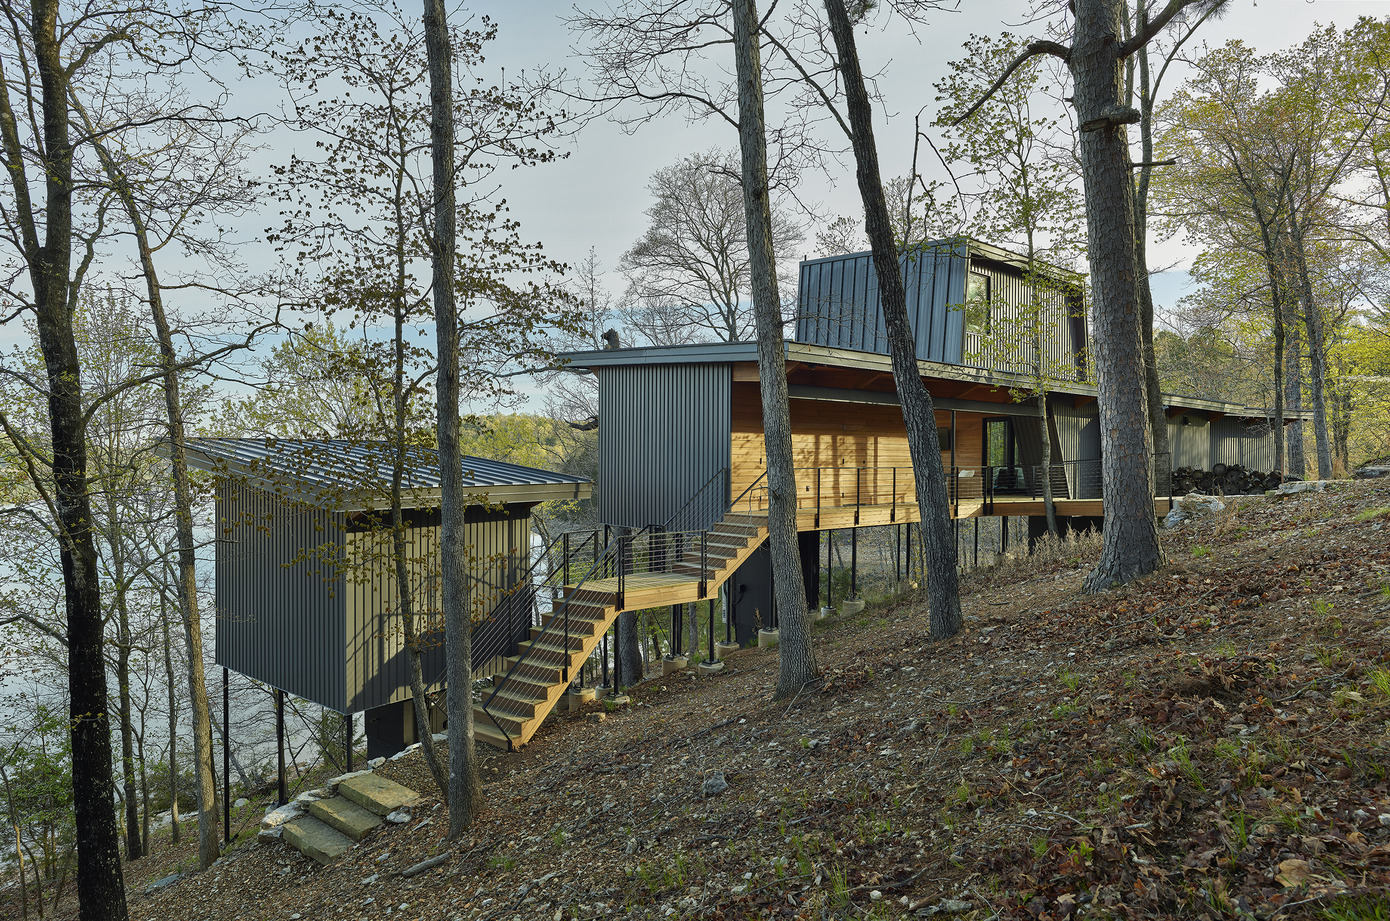 Grist Mill Cabin: Modern Retreat in Arkansas Ozarks